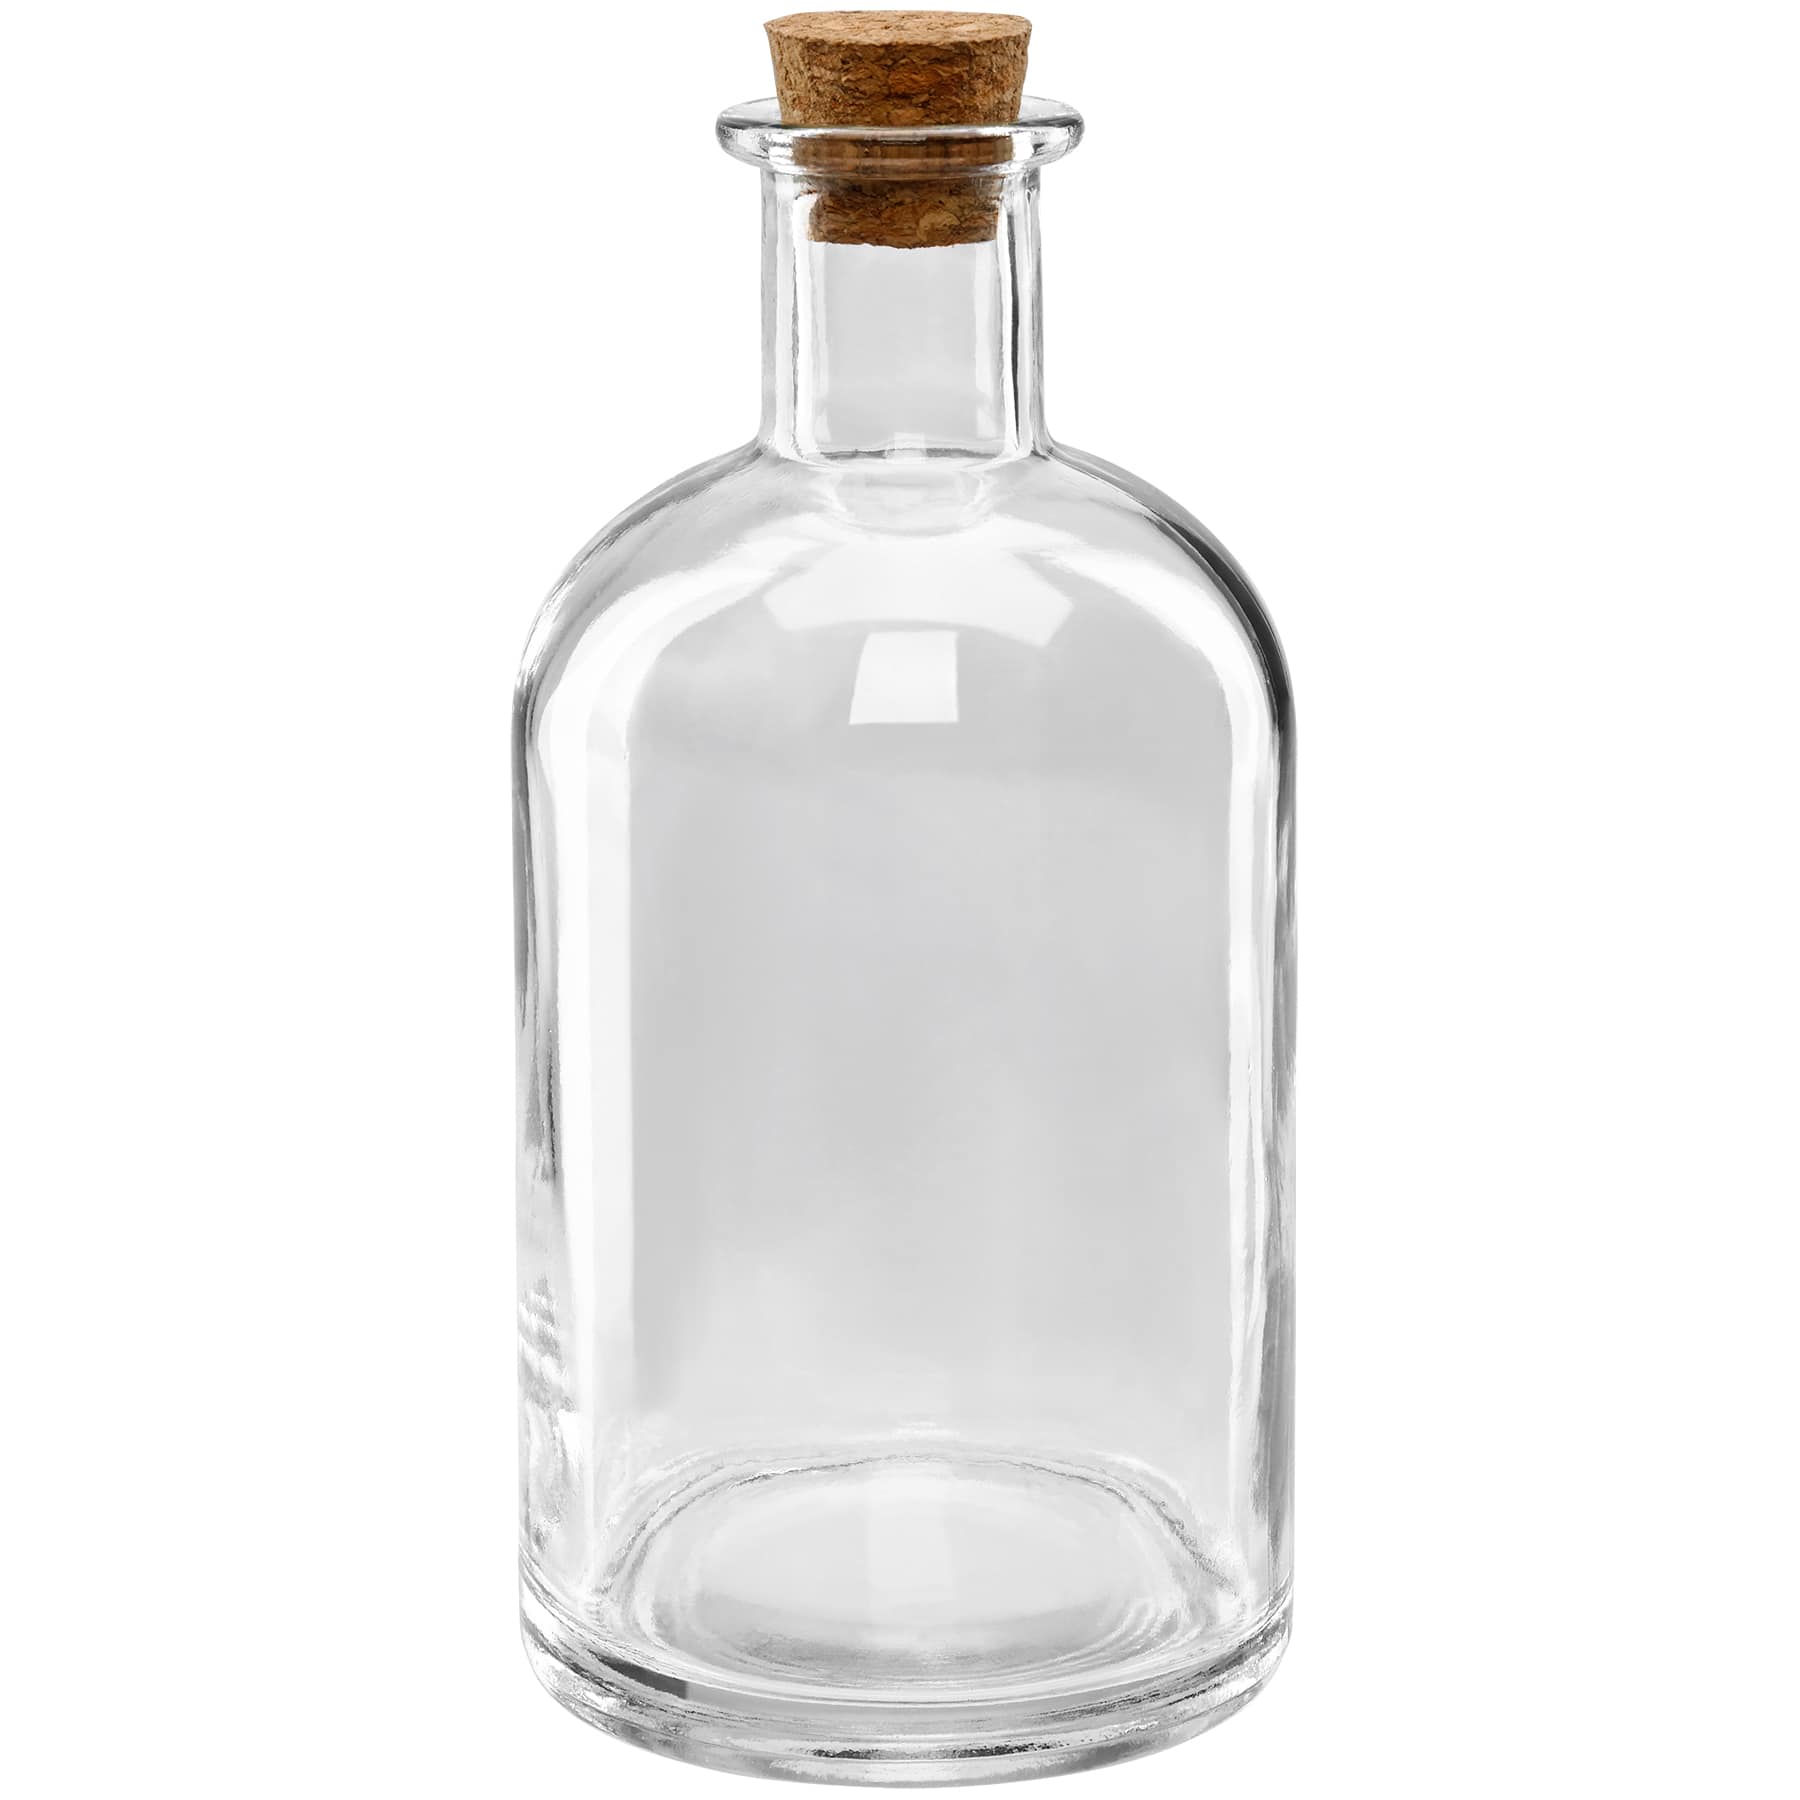 16oz. Glass Jar by Ashland®, 12ct.